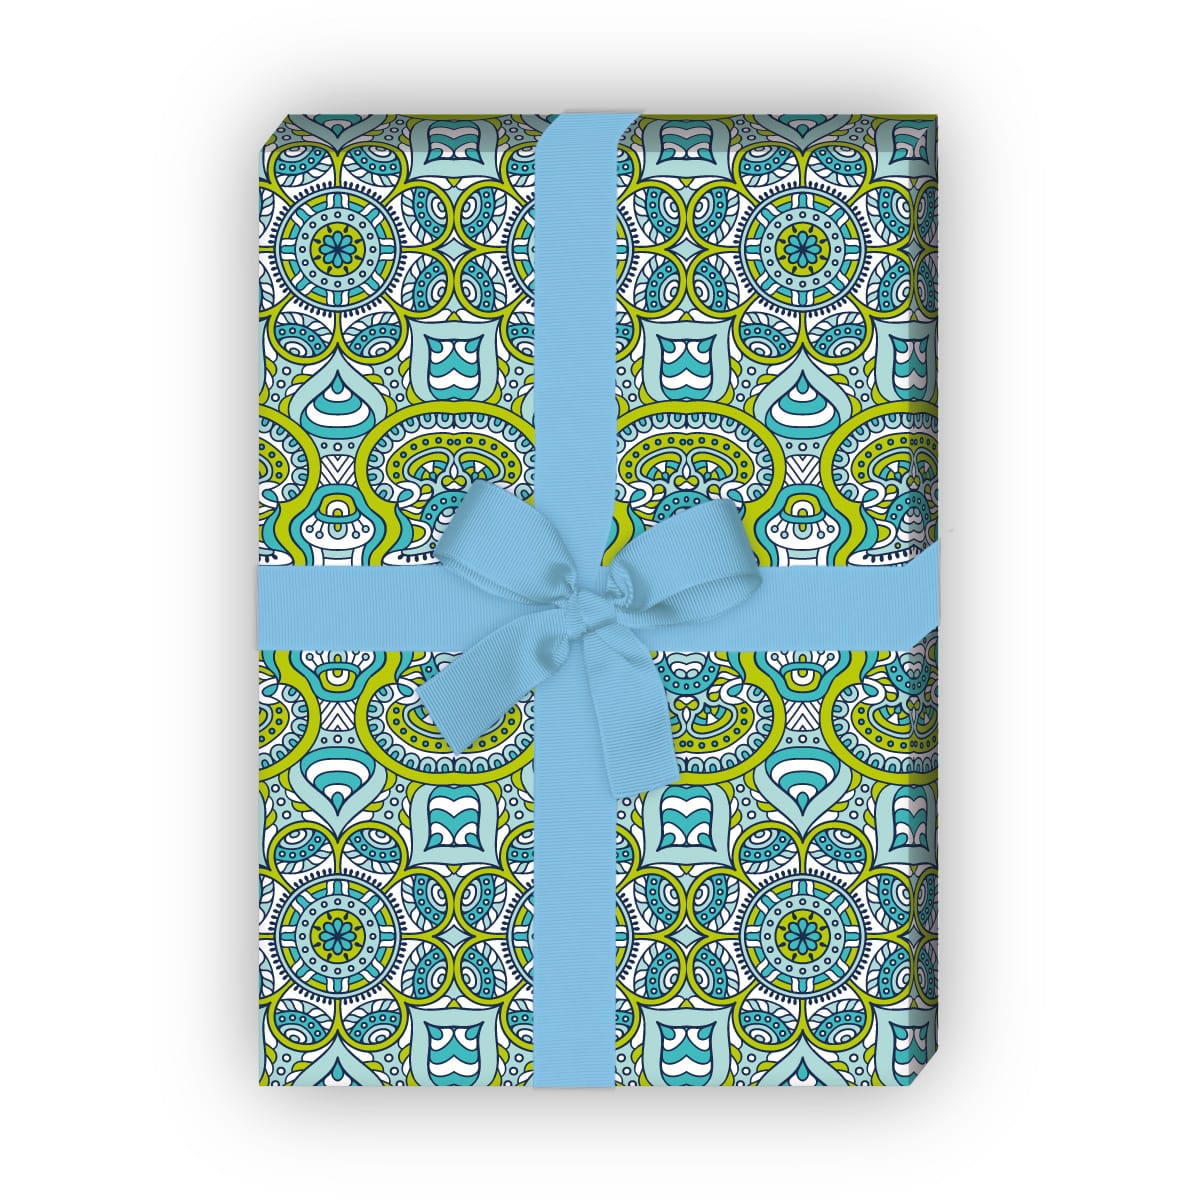 Kartenkaufrausch: Designer ethno Geschenkpapier im aus unserer Geburtstags Papeterie in blau